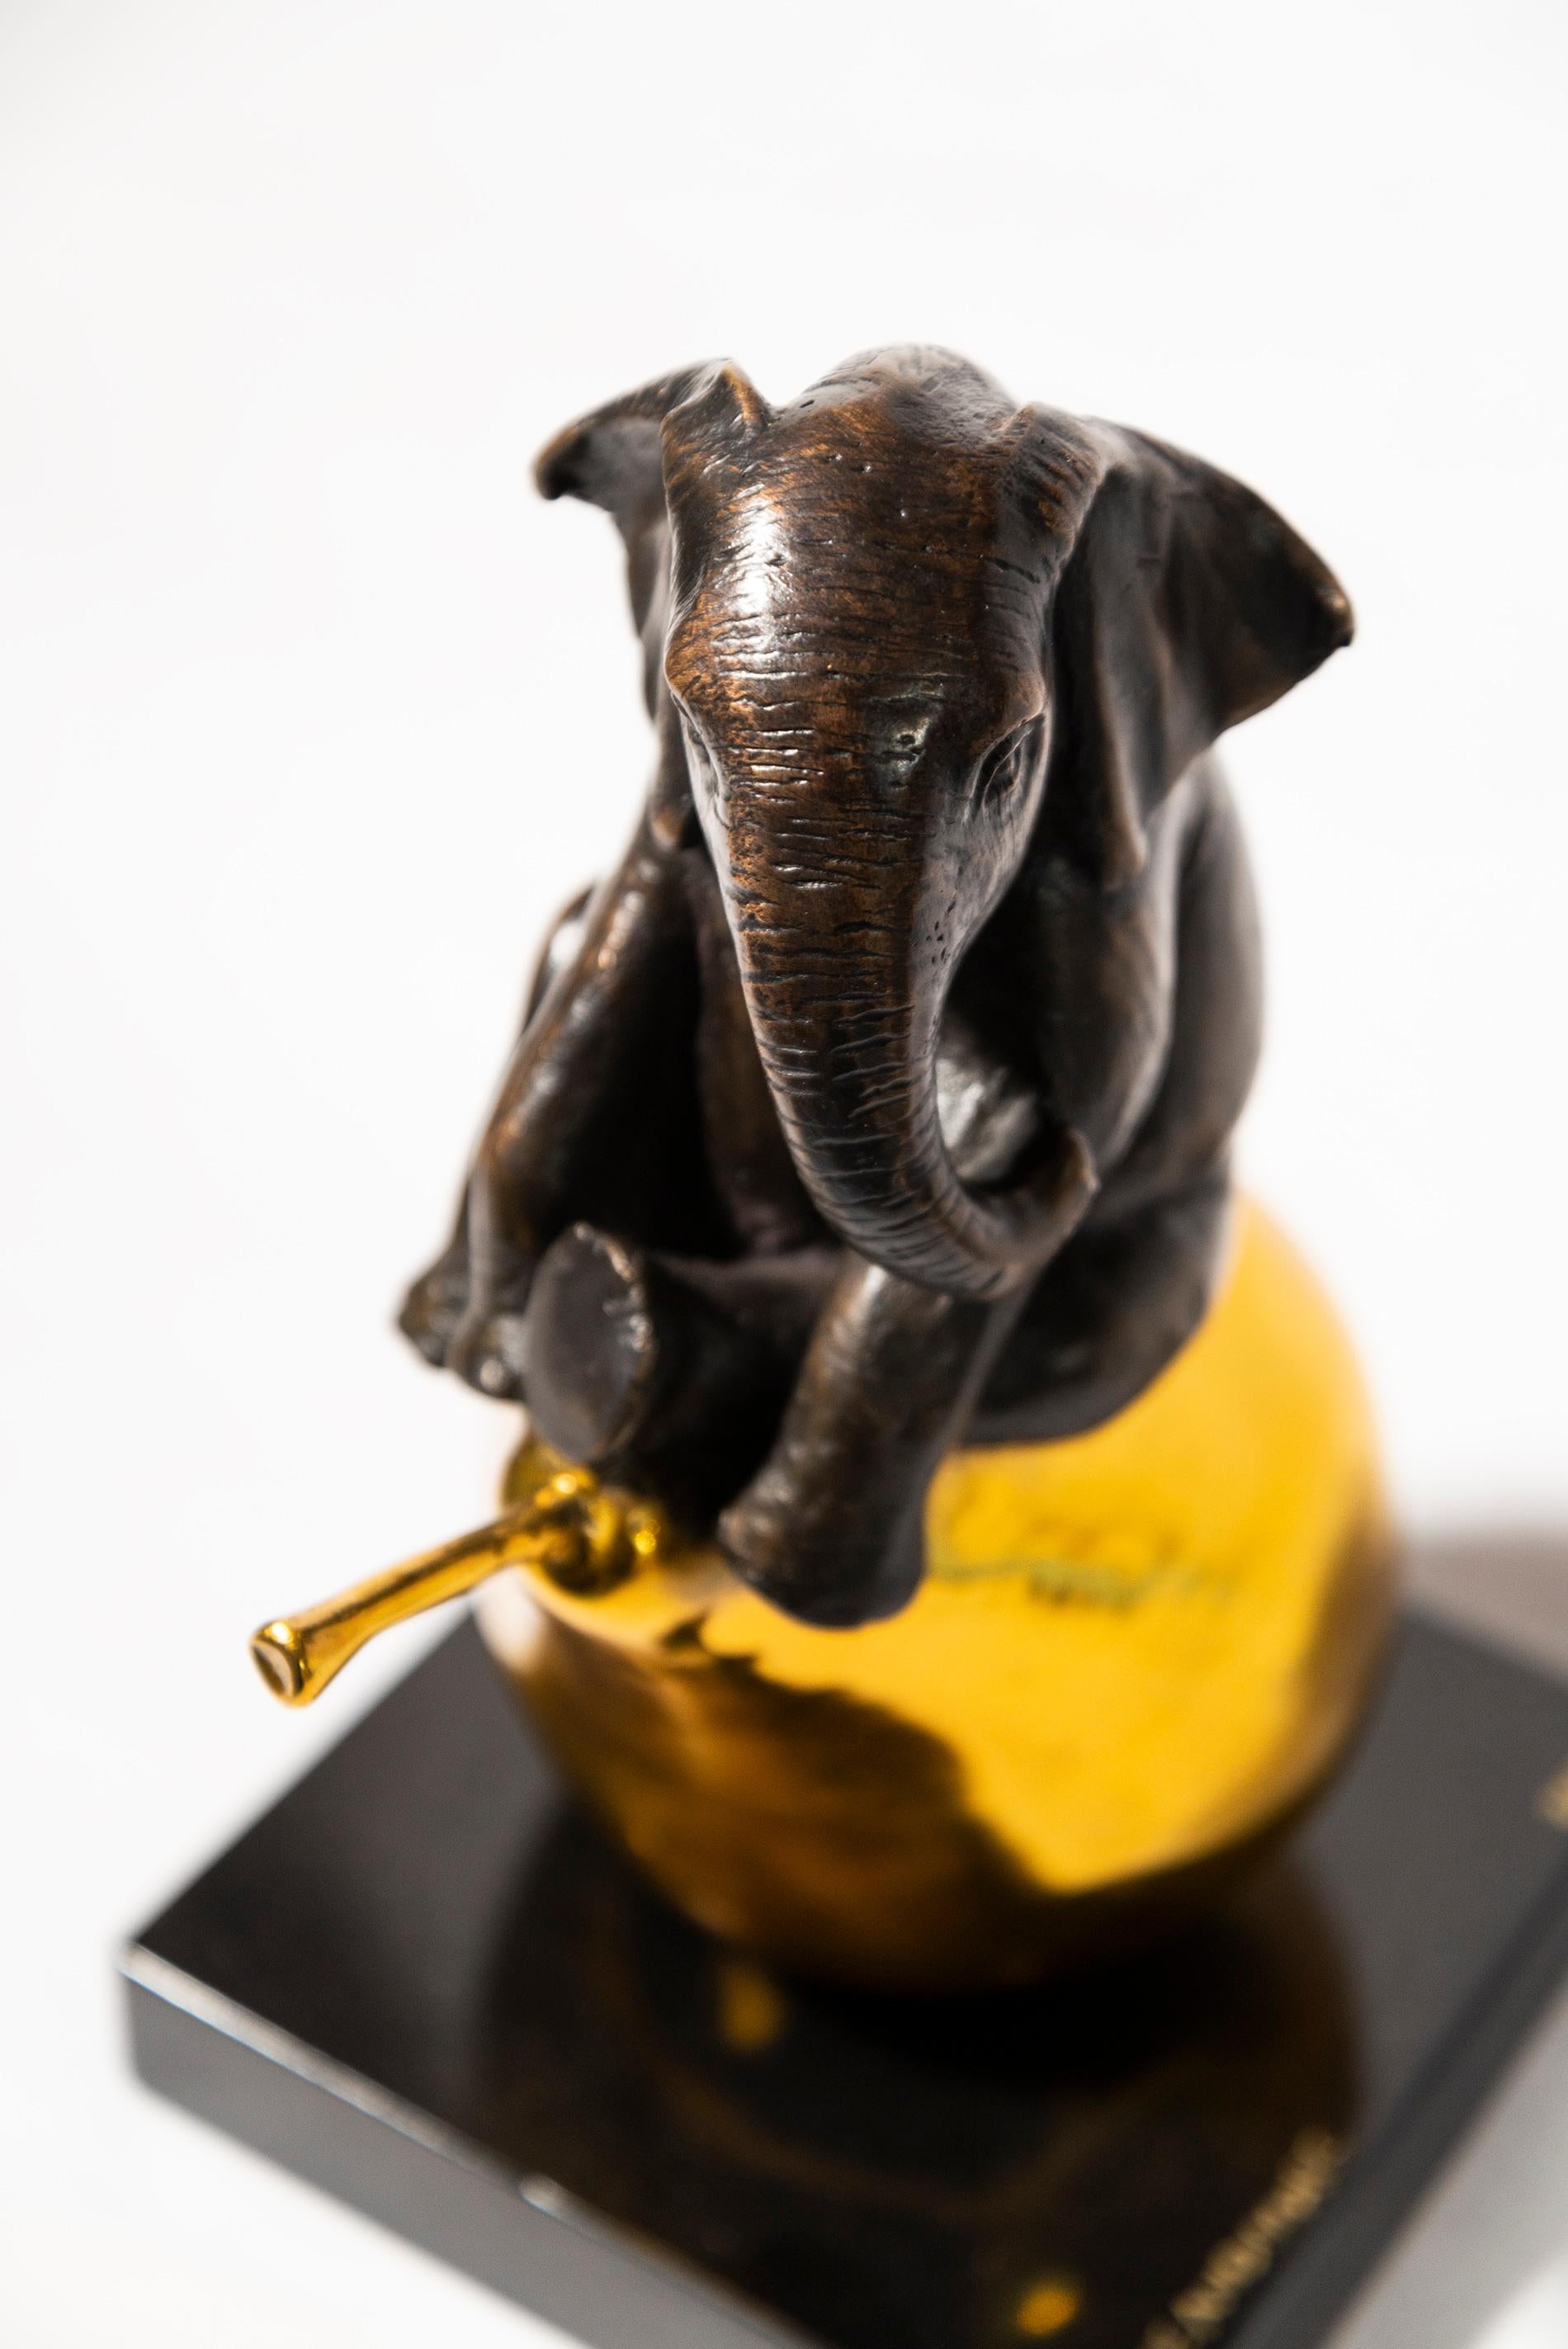 Le noble géant africain, l'éléphant, est depuis longtemps un sujet de prédilection pour l'art délicieux de Gillie and Marc. Gillie a grandi en Zambie, où elle a appris à apprécier la beauté et la majesté de la vie sauvage. Enfant, elle a